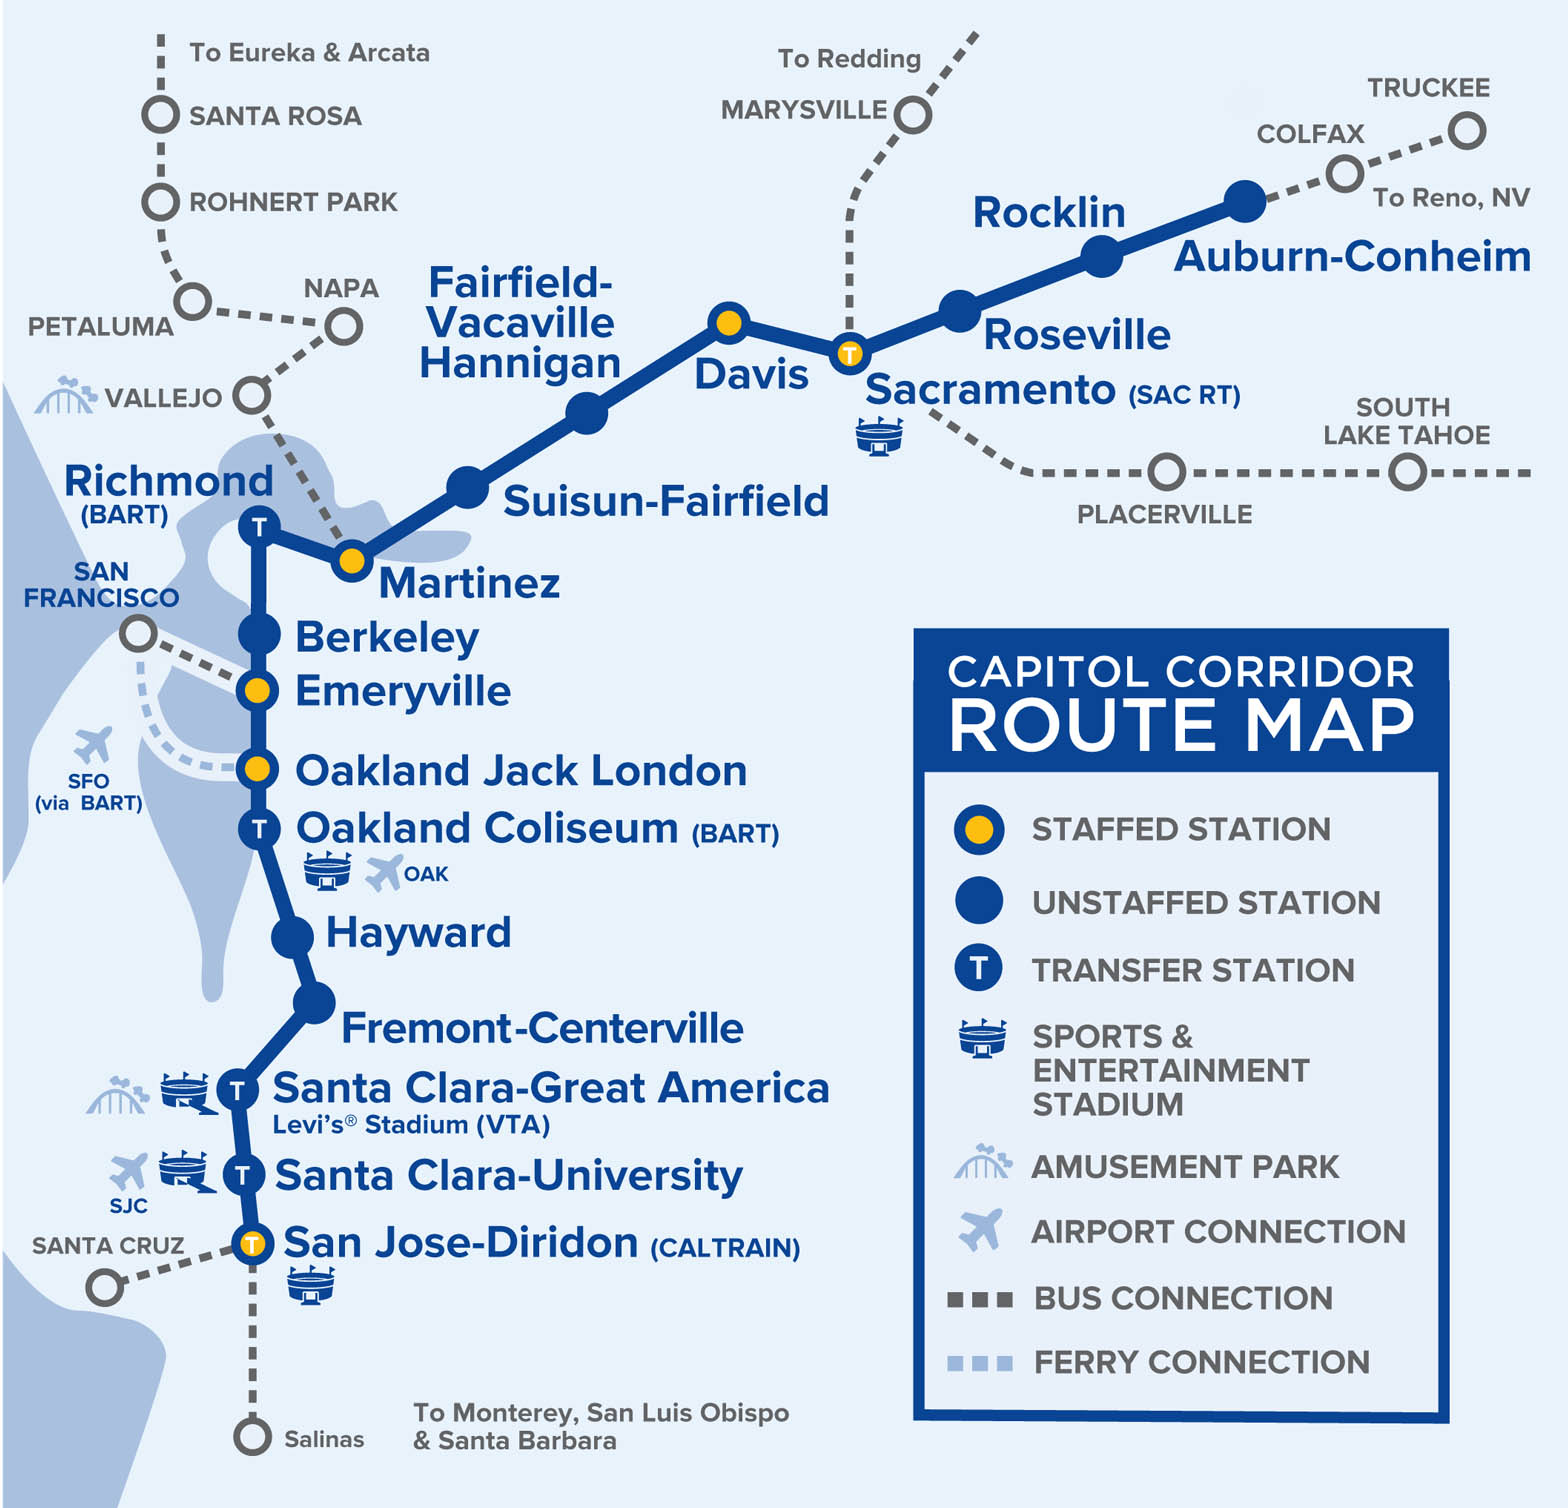 CCJPA Route Map Jan 2022 1 